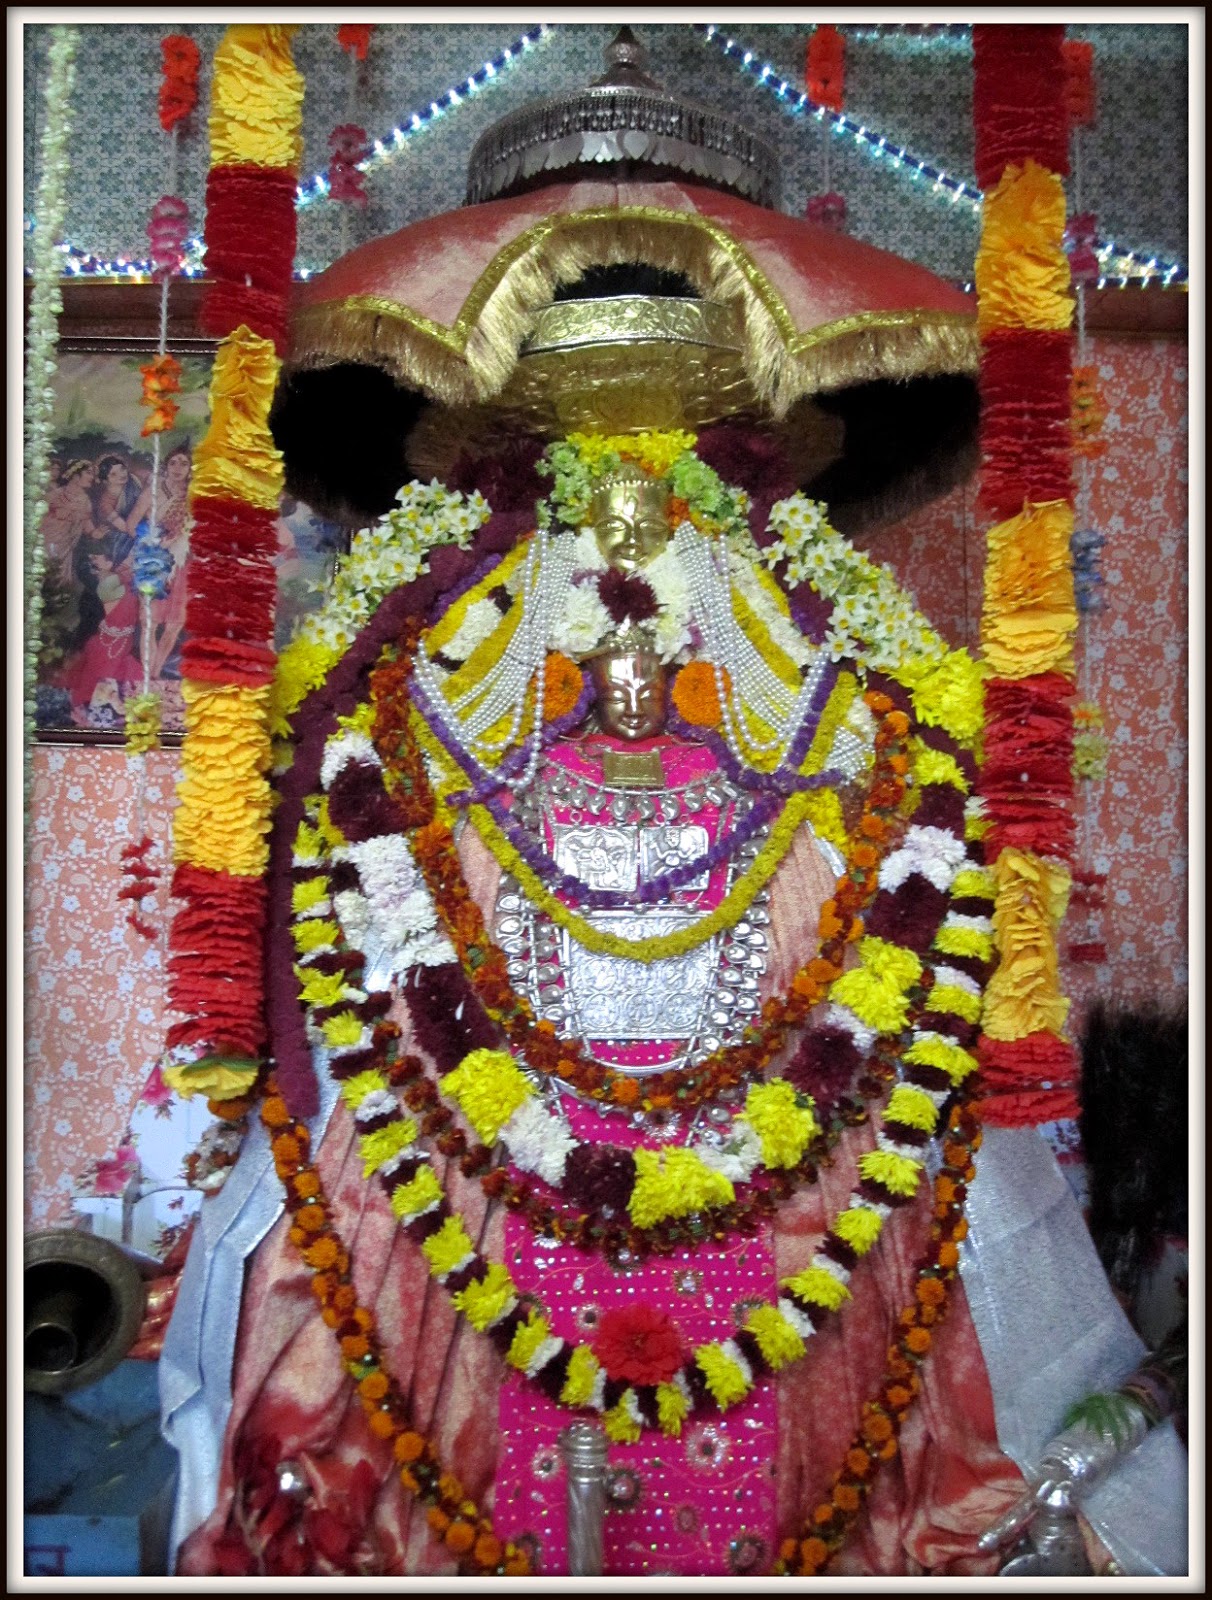 lord-rama-s-sister-shanta-devi-s-temple-is-located-in-kullu-श्रीराम की बड़ी बहन शांता देवी का मंदिर